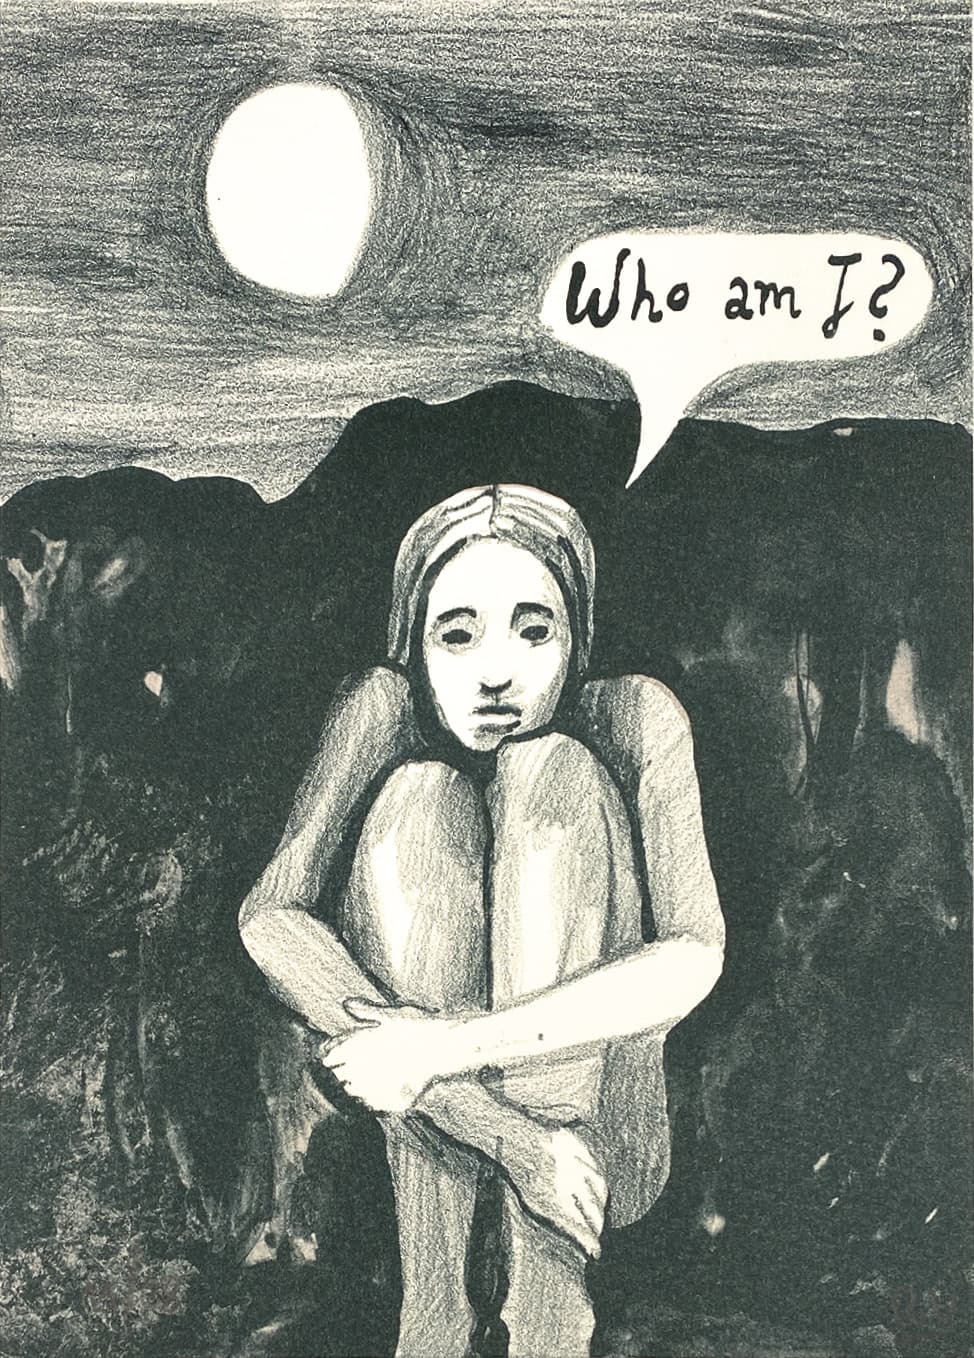 Rikke Villadsen - "Who am I?"